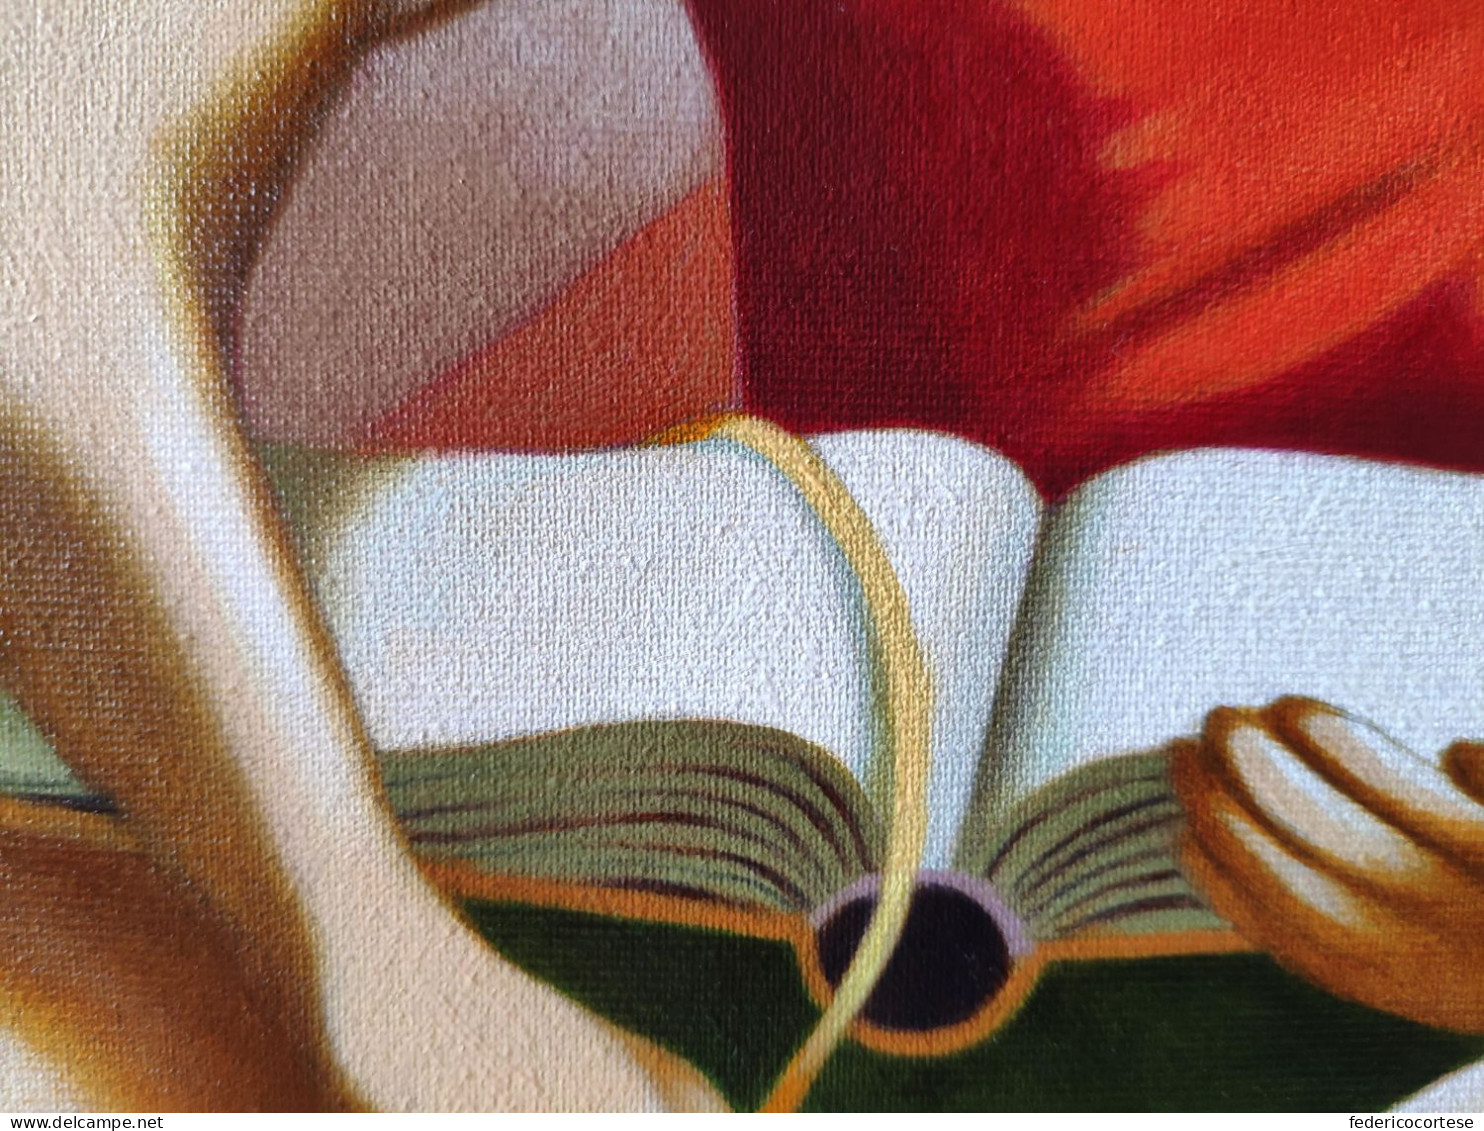 La stanza di lettura, olio su tela / The reading room, oil on canvas